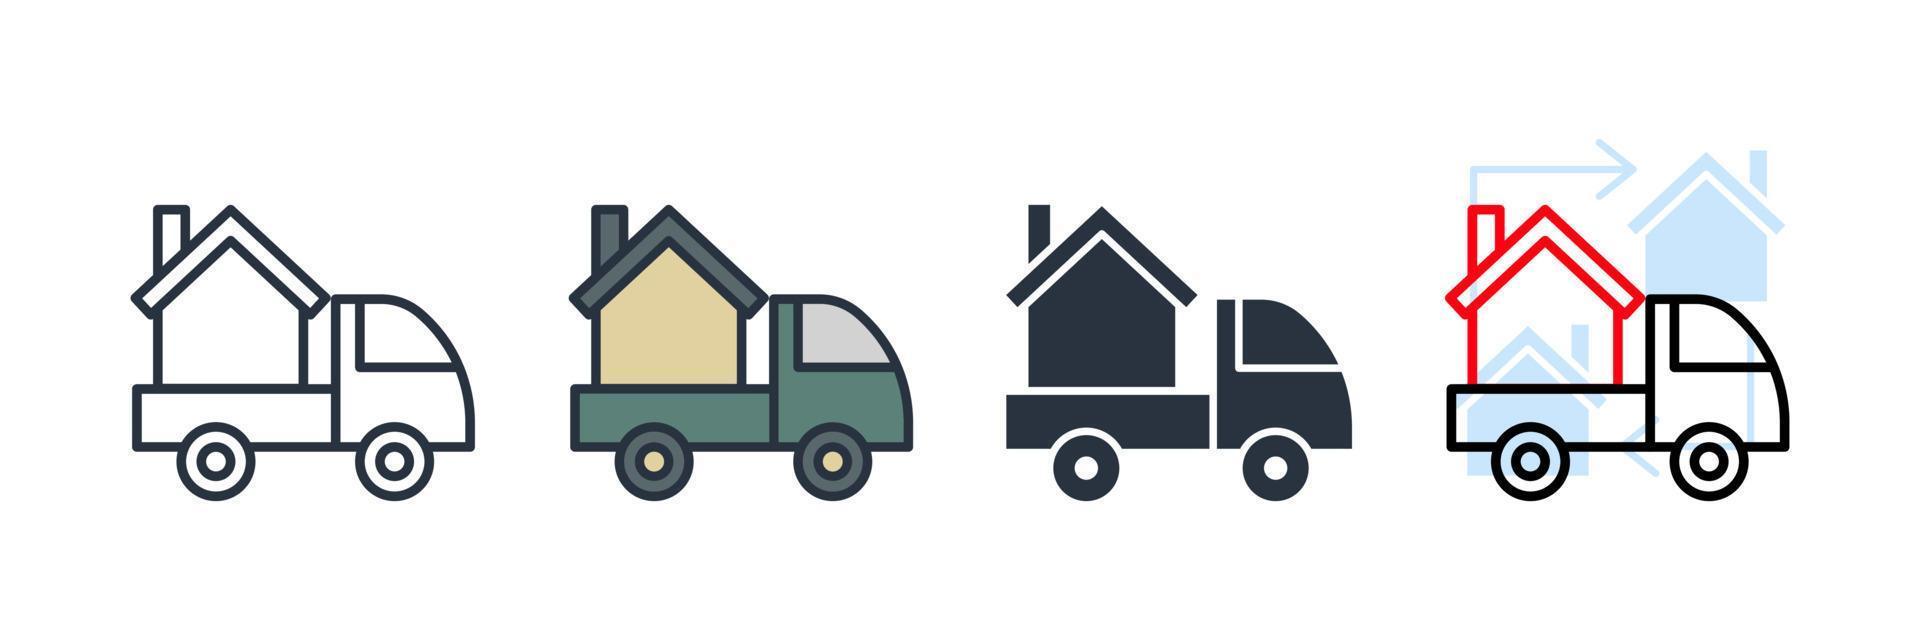 bewegende home pictogram logo vectorillustratie. thuisbezorgingsvrachtwagen symboolsjabloon voor grafische en webdesign collectie vector